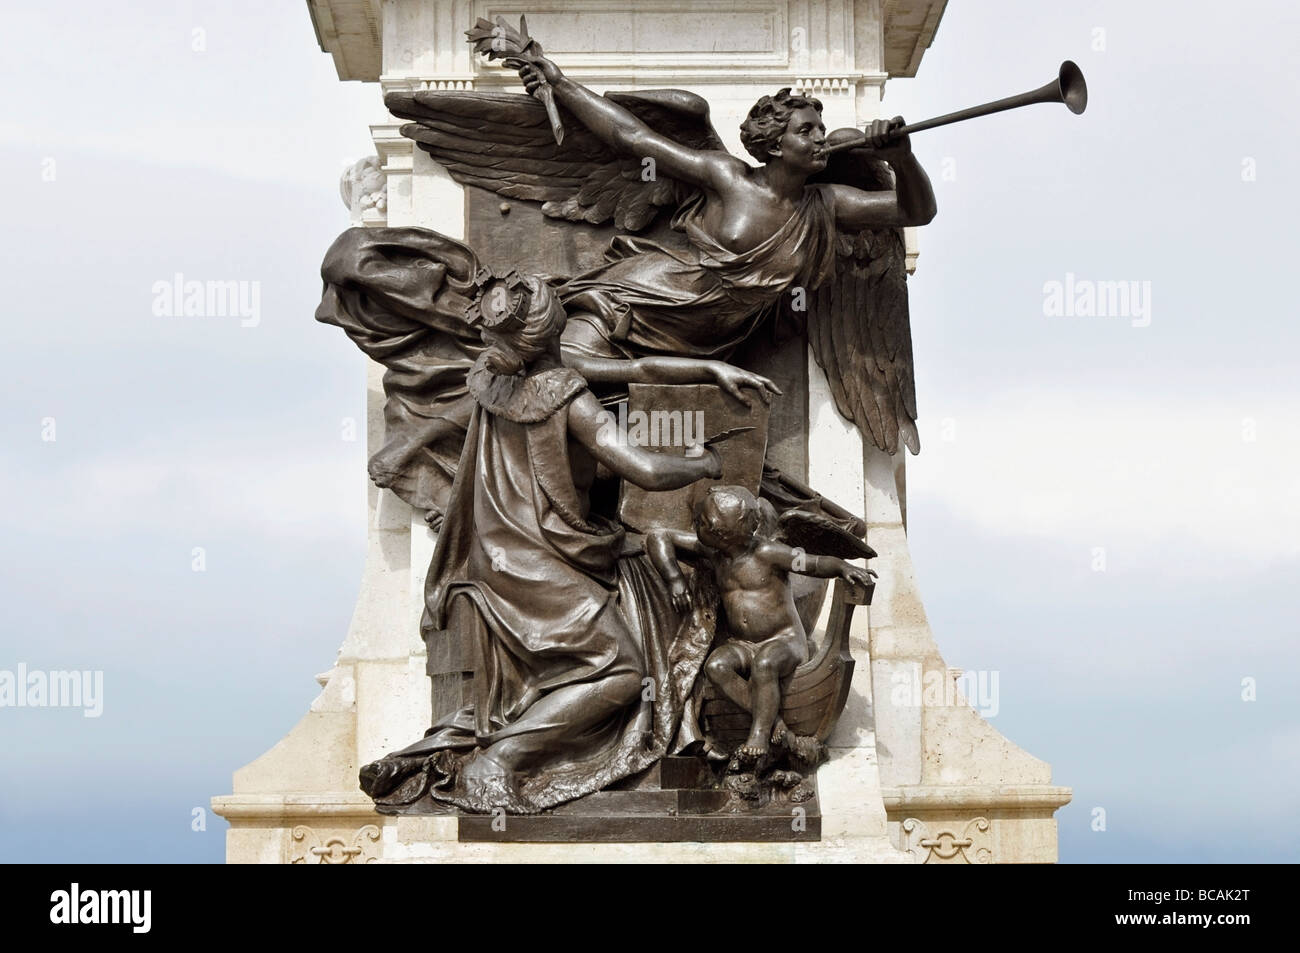 Piédestal de la Statue de Samuel de Champlain, Détail, Sculpture en bronze à la Terrasse Dufferin, vieille ville de Québec, Canada. Banque D'Images